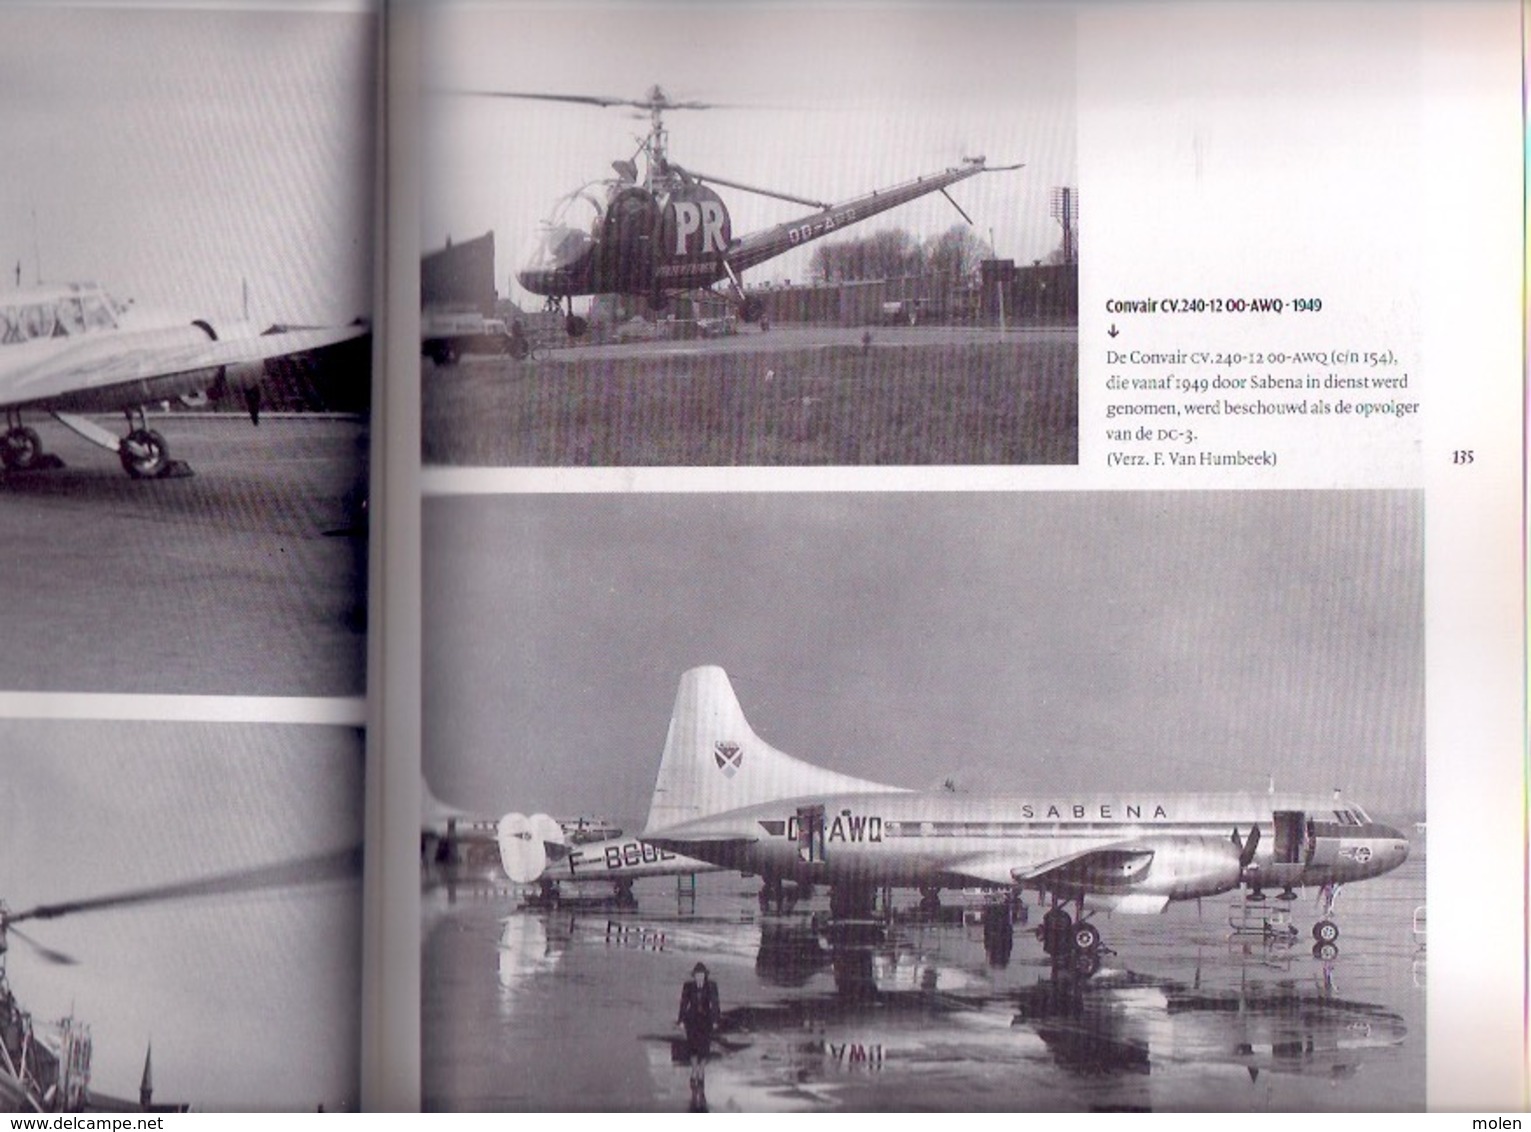 100 JAAR LUCHTVAART IN BELGIË 206pg ©2002 VLIEGTUIG SABENA AVIATION AVION luchthaven vliegveld boek geschiedenis Z447